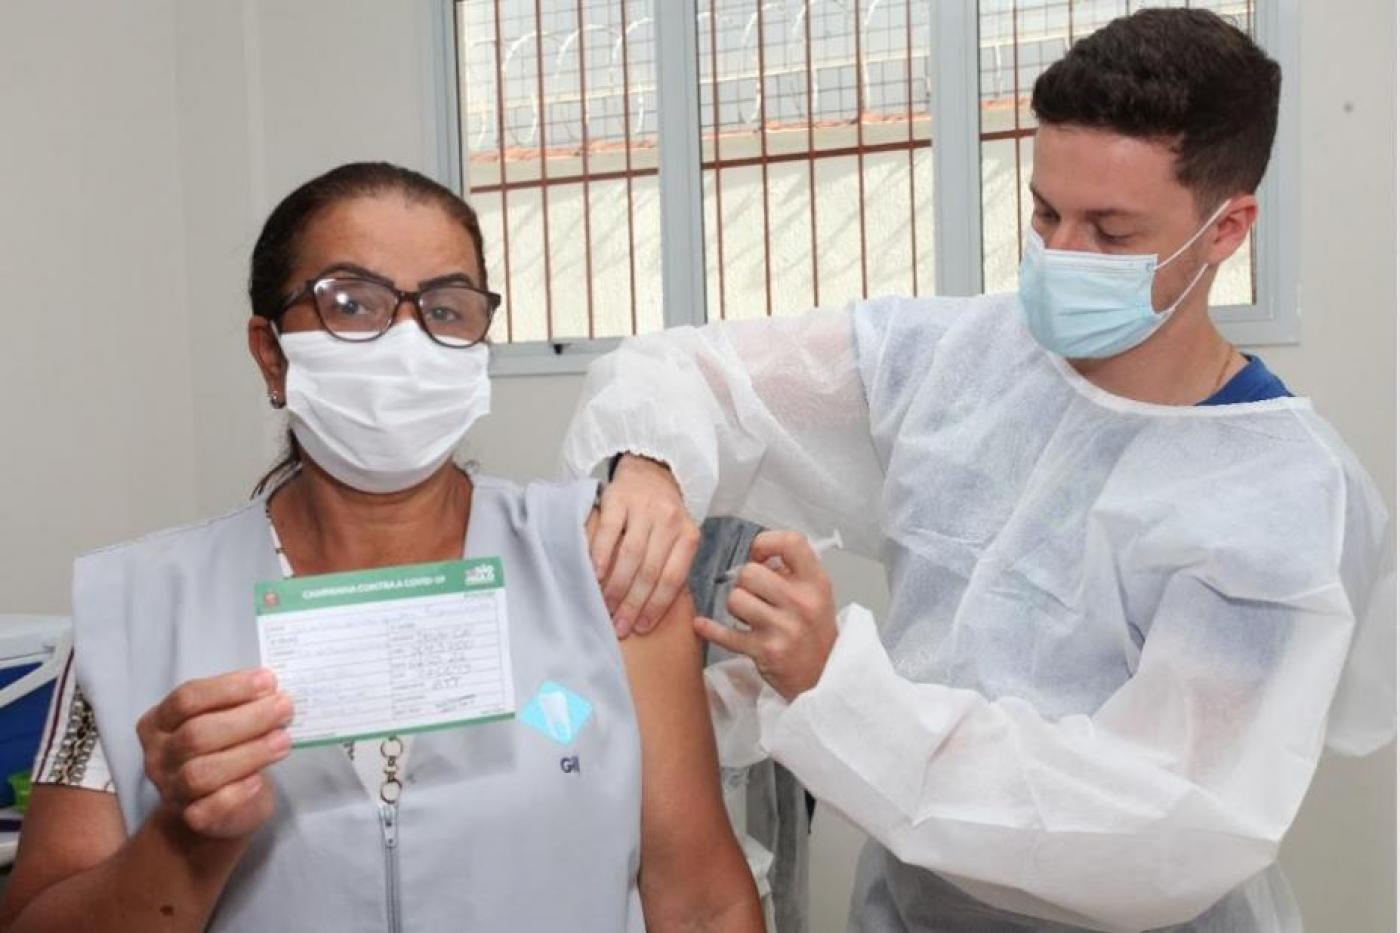 Trabalhadora da saúde mostra carteira de vacinação enquanto recebe vacina no braço por profissional paramentado. #pracegover